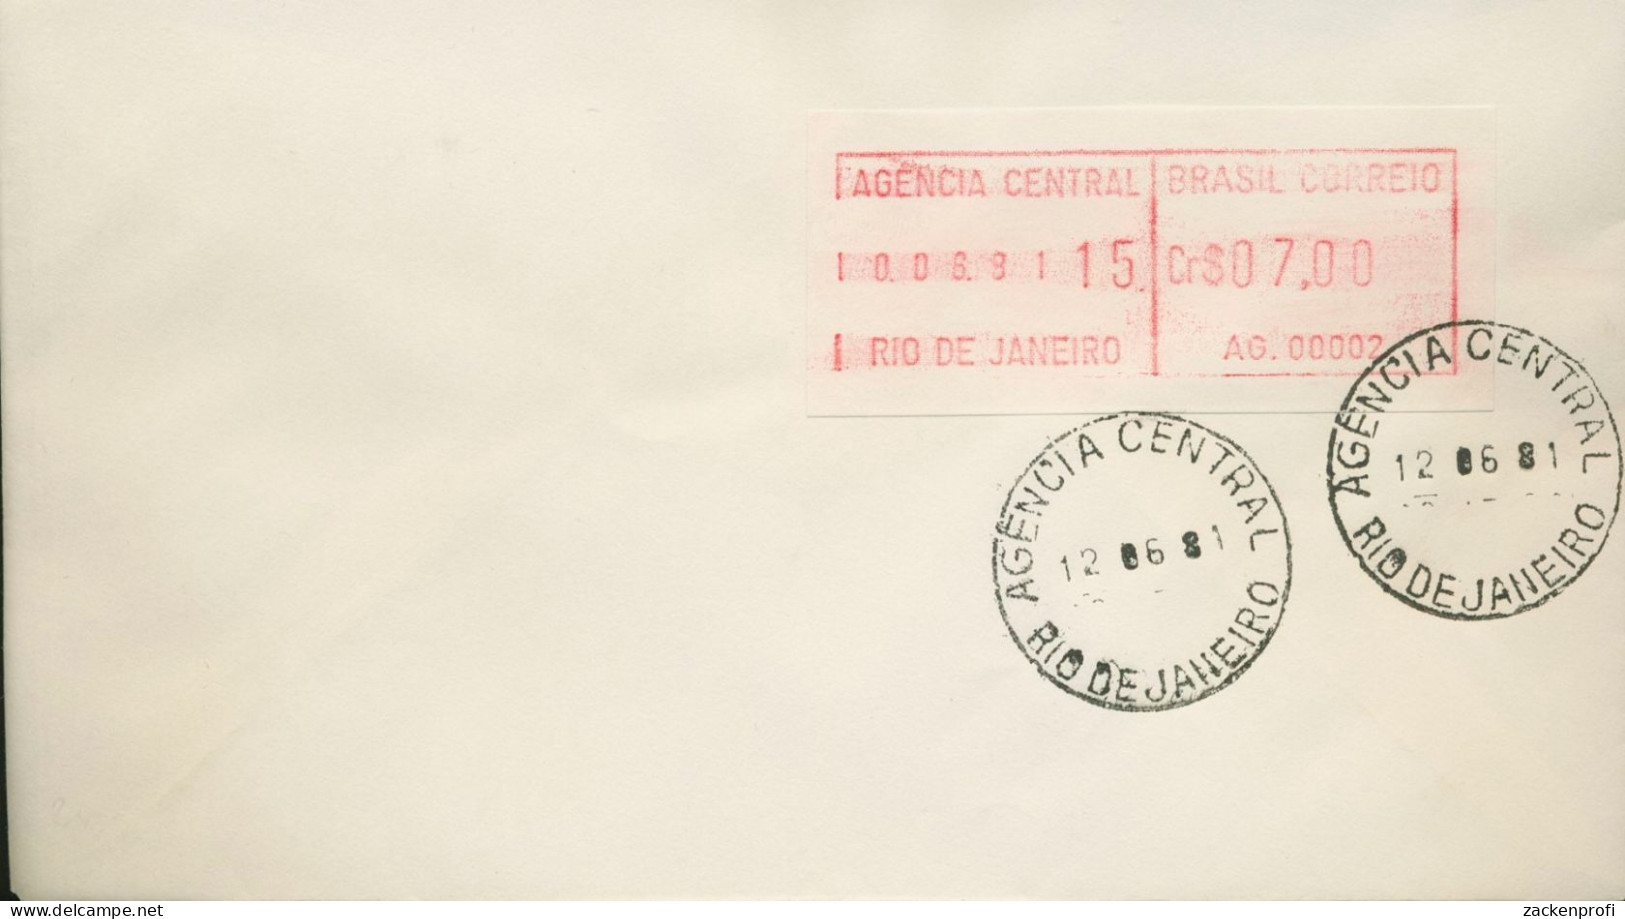 Brasilien 1981 ATM Automat AG. 00002 Einzelwert ATM 2.2 B Auf Brief (X80595) - Franking Labels